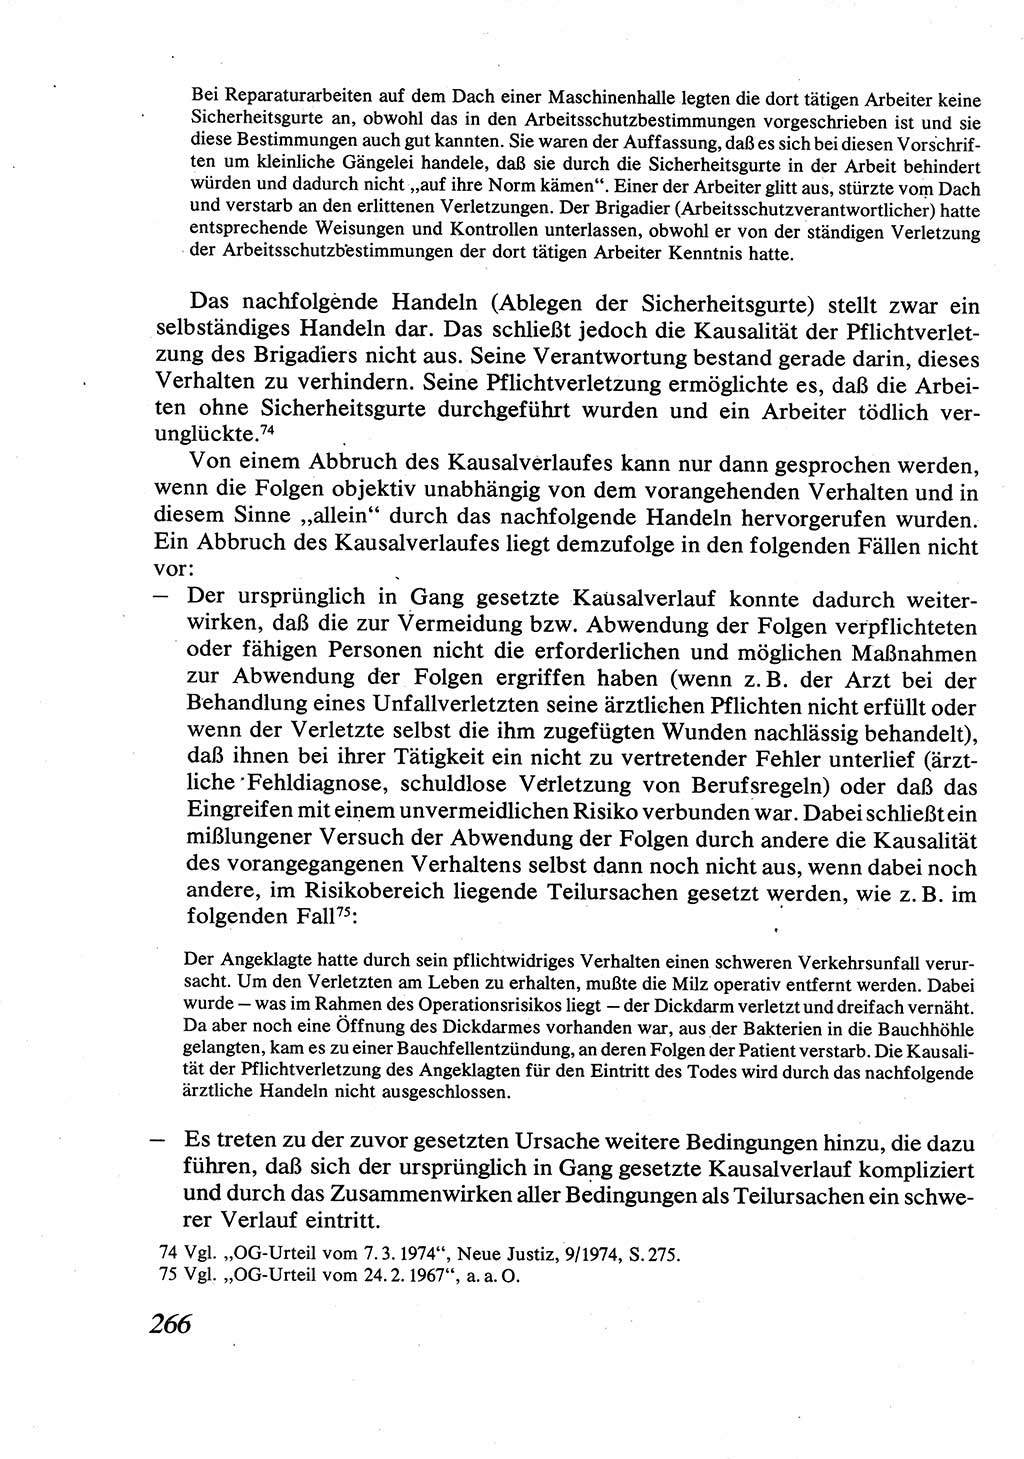 Strafrecht [Deutsche Demokratische Republik (DDR)], Allgemeiner Teil, Lehrbuch 1976, Seite 266 (Strafr. DDR AT Lb. 1976, S. 266)